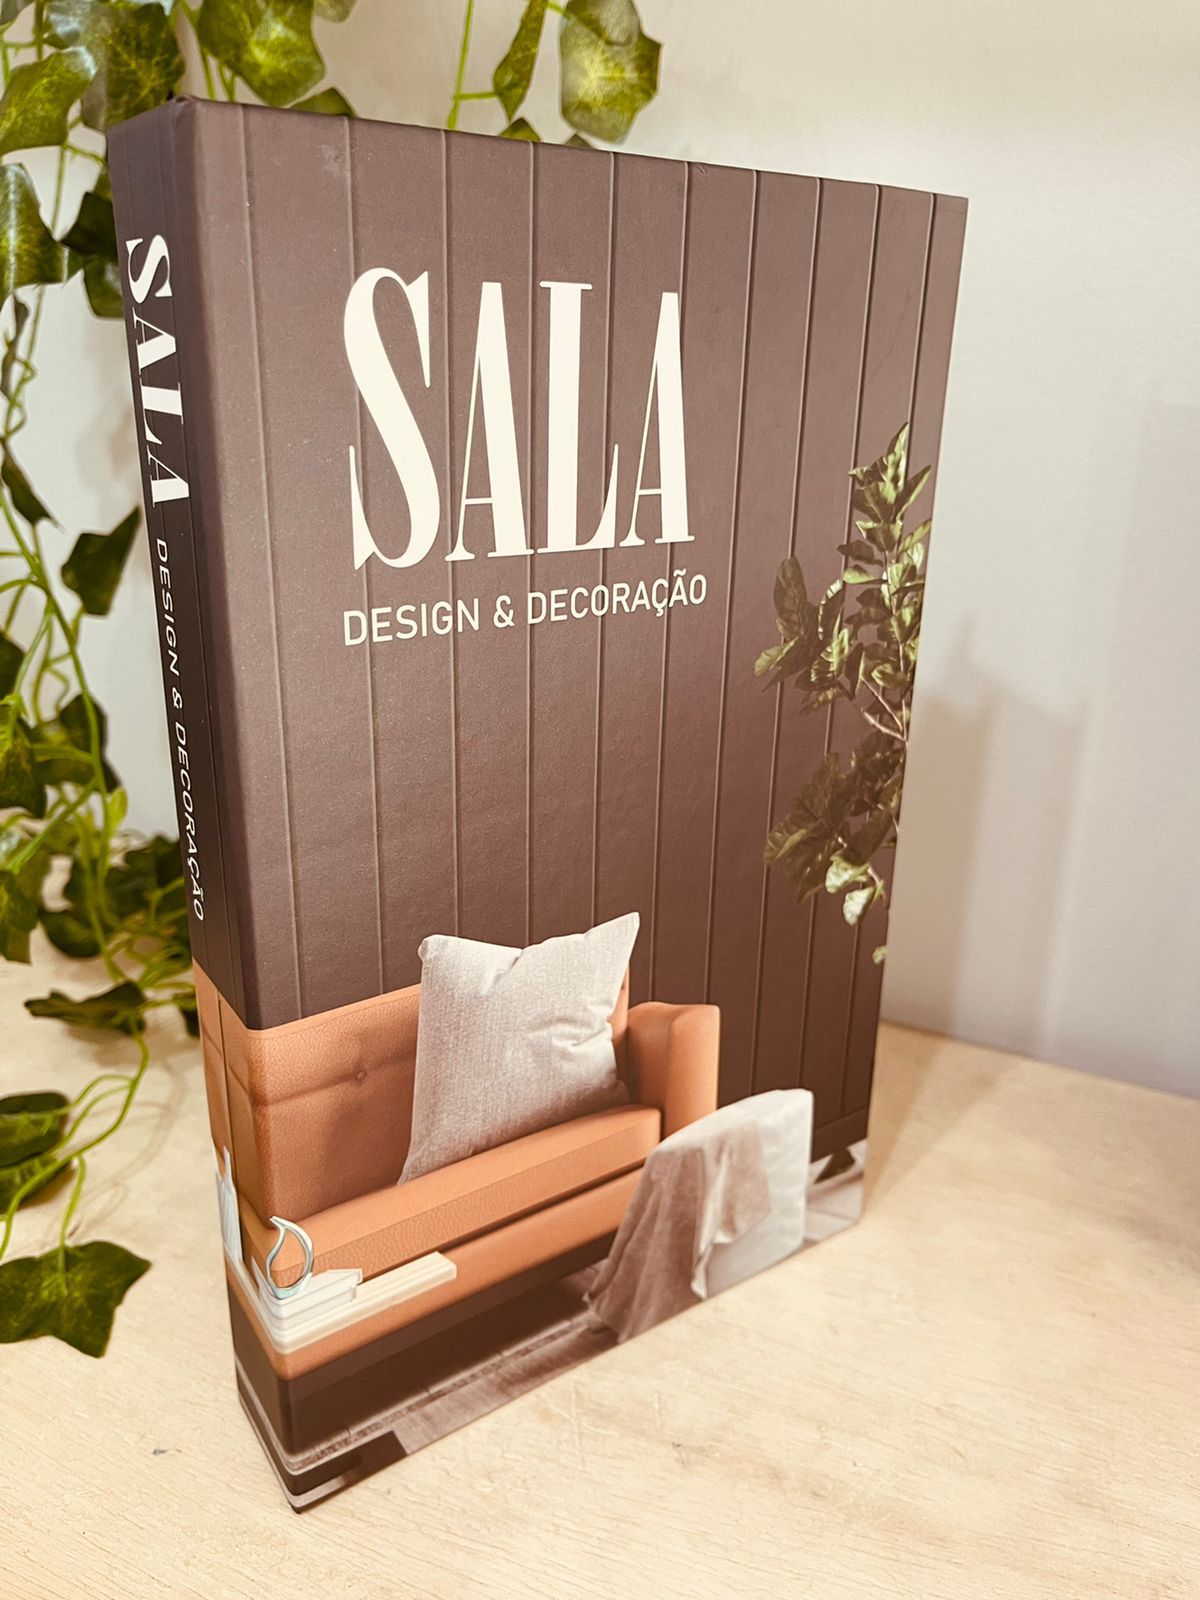 Livro Caixa 25x16 "Sala Design e decoração" - EdCasa Decor